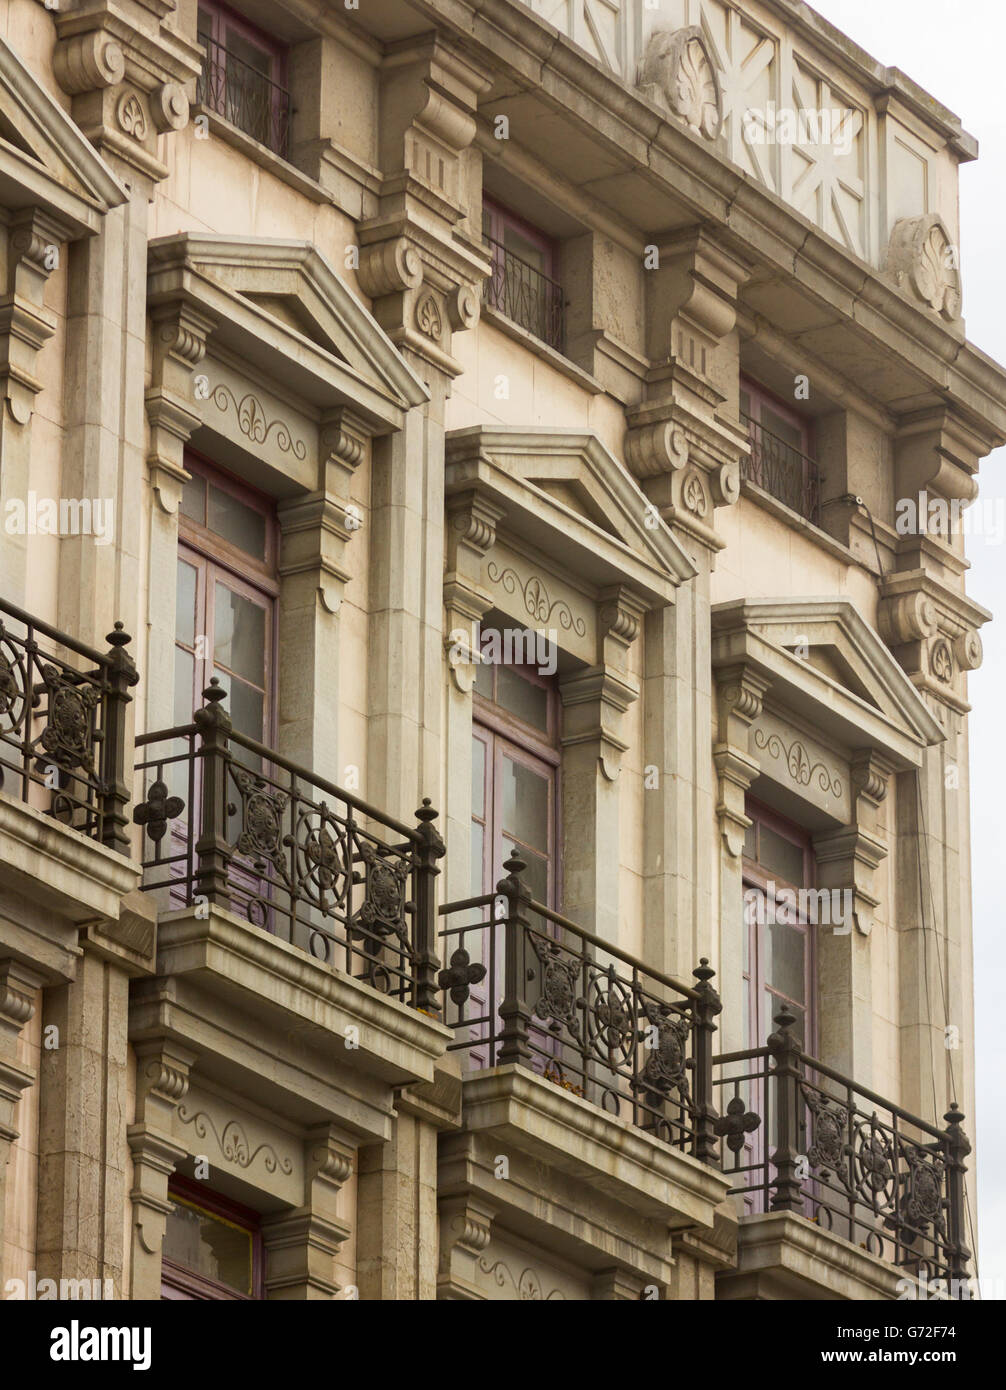 Typische schöne und bunte Gebäude in der Stadt Llanes in Spanien Stockfoto